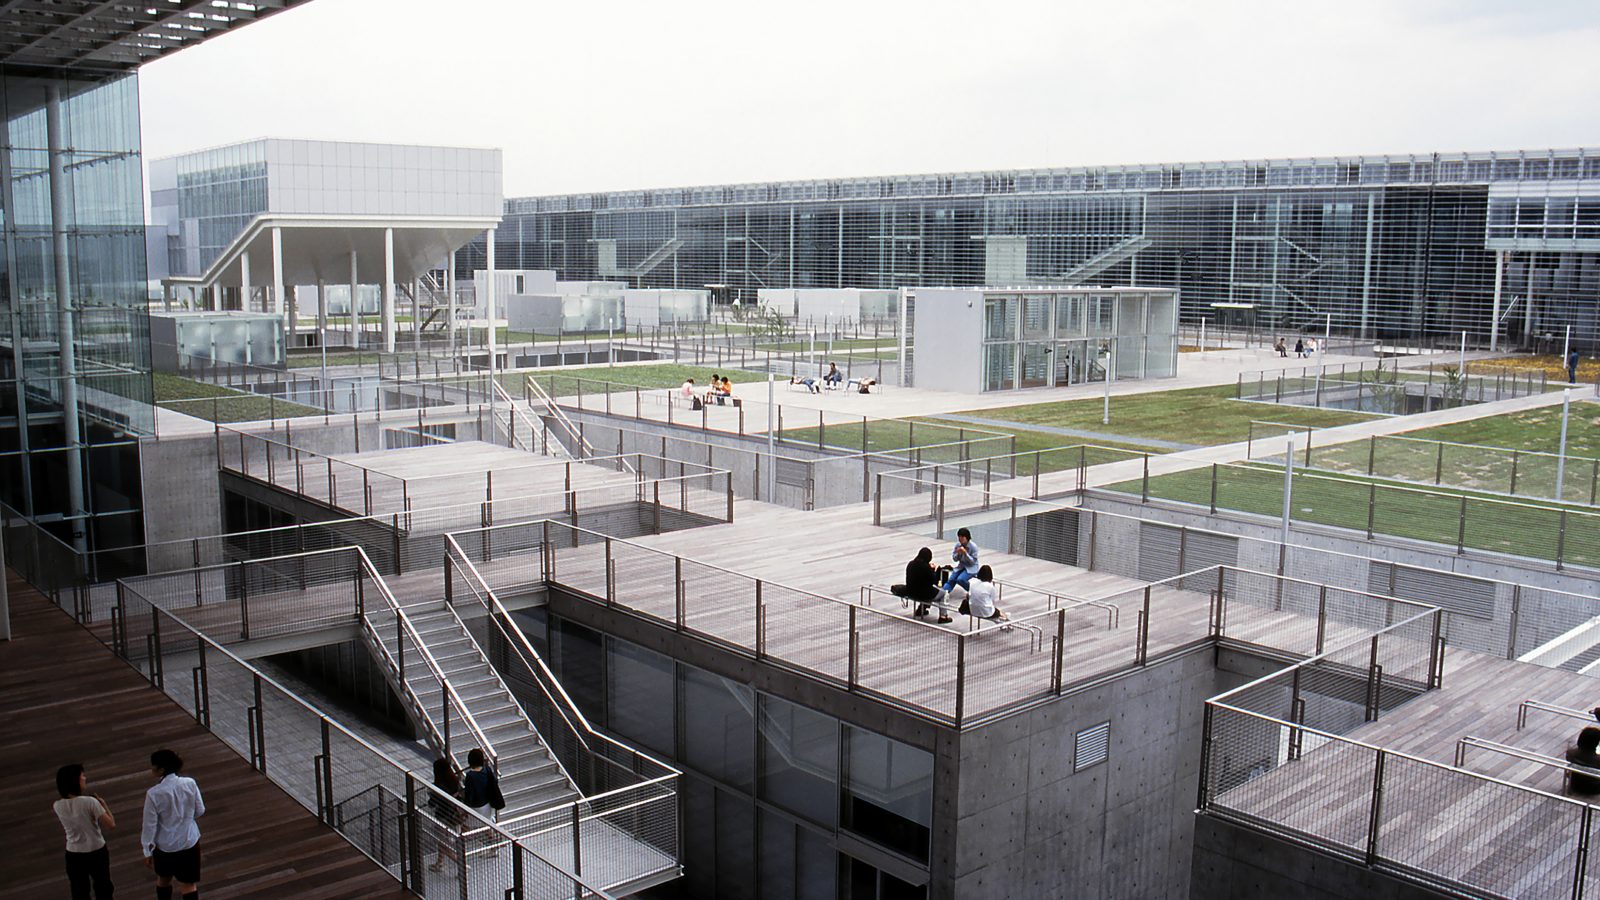 プリツカー賞に輝いた山本理顕が米紙に語る「コミュニティのための建築」 | 「建築界のノーベル賞」を受賞して